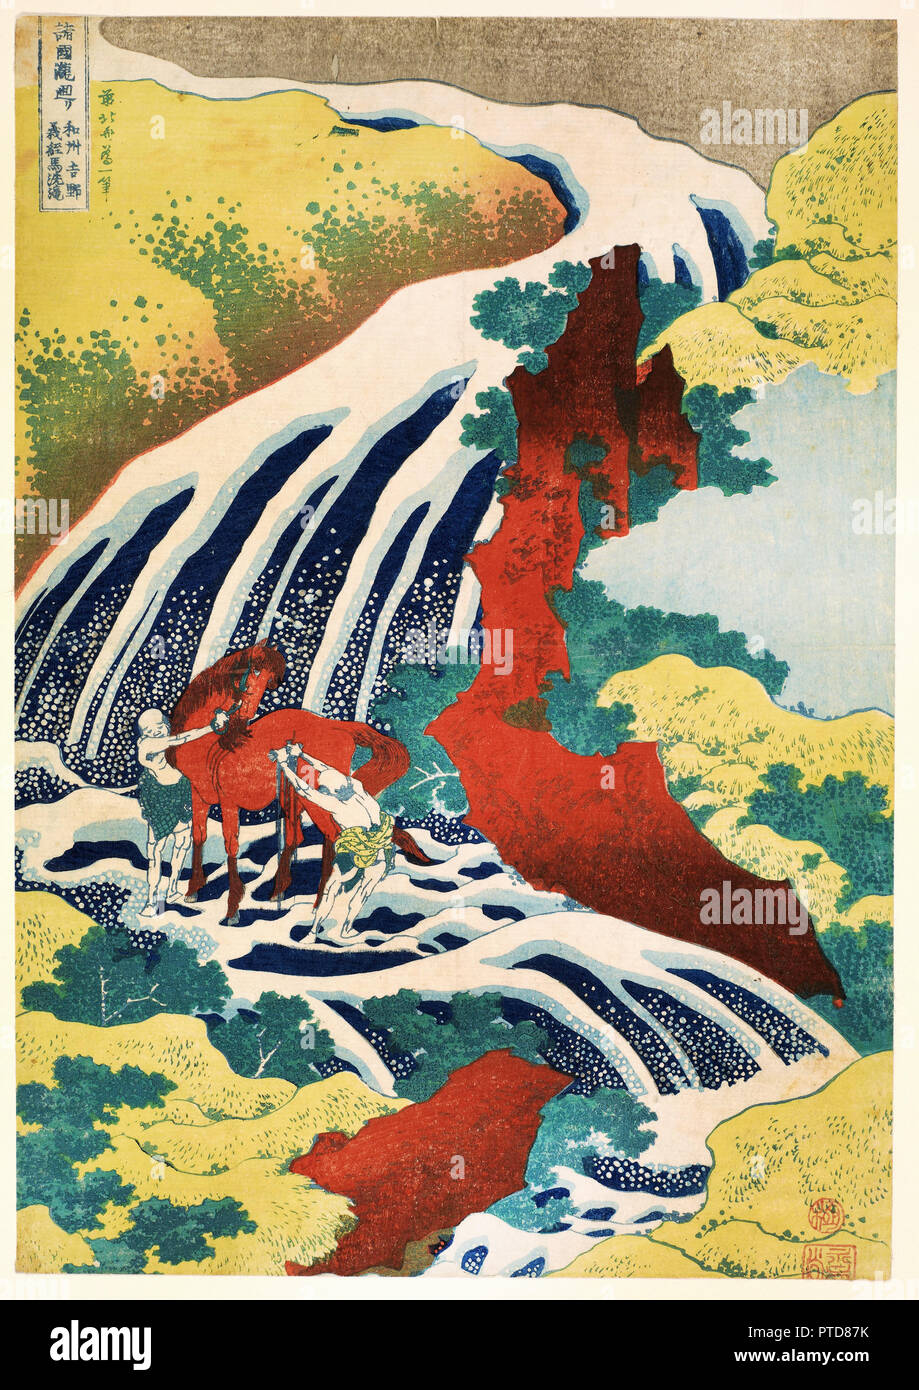 Katsushika Hokusai, Yoshitsune Falls, à partir de la célèbre série de cascades dans diverses provinces, 1833 encre et couleur sur papier, estampe, Freer Gallery of Art, Washington, D.C., USA. Banque D'Images